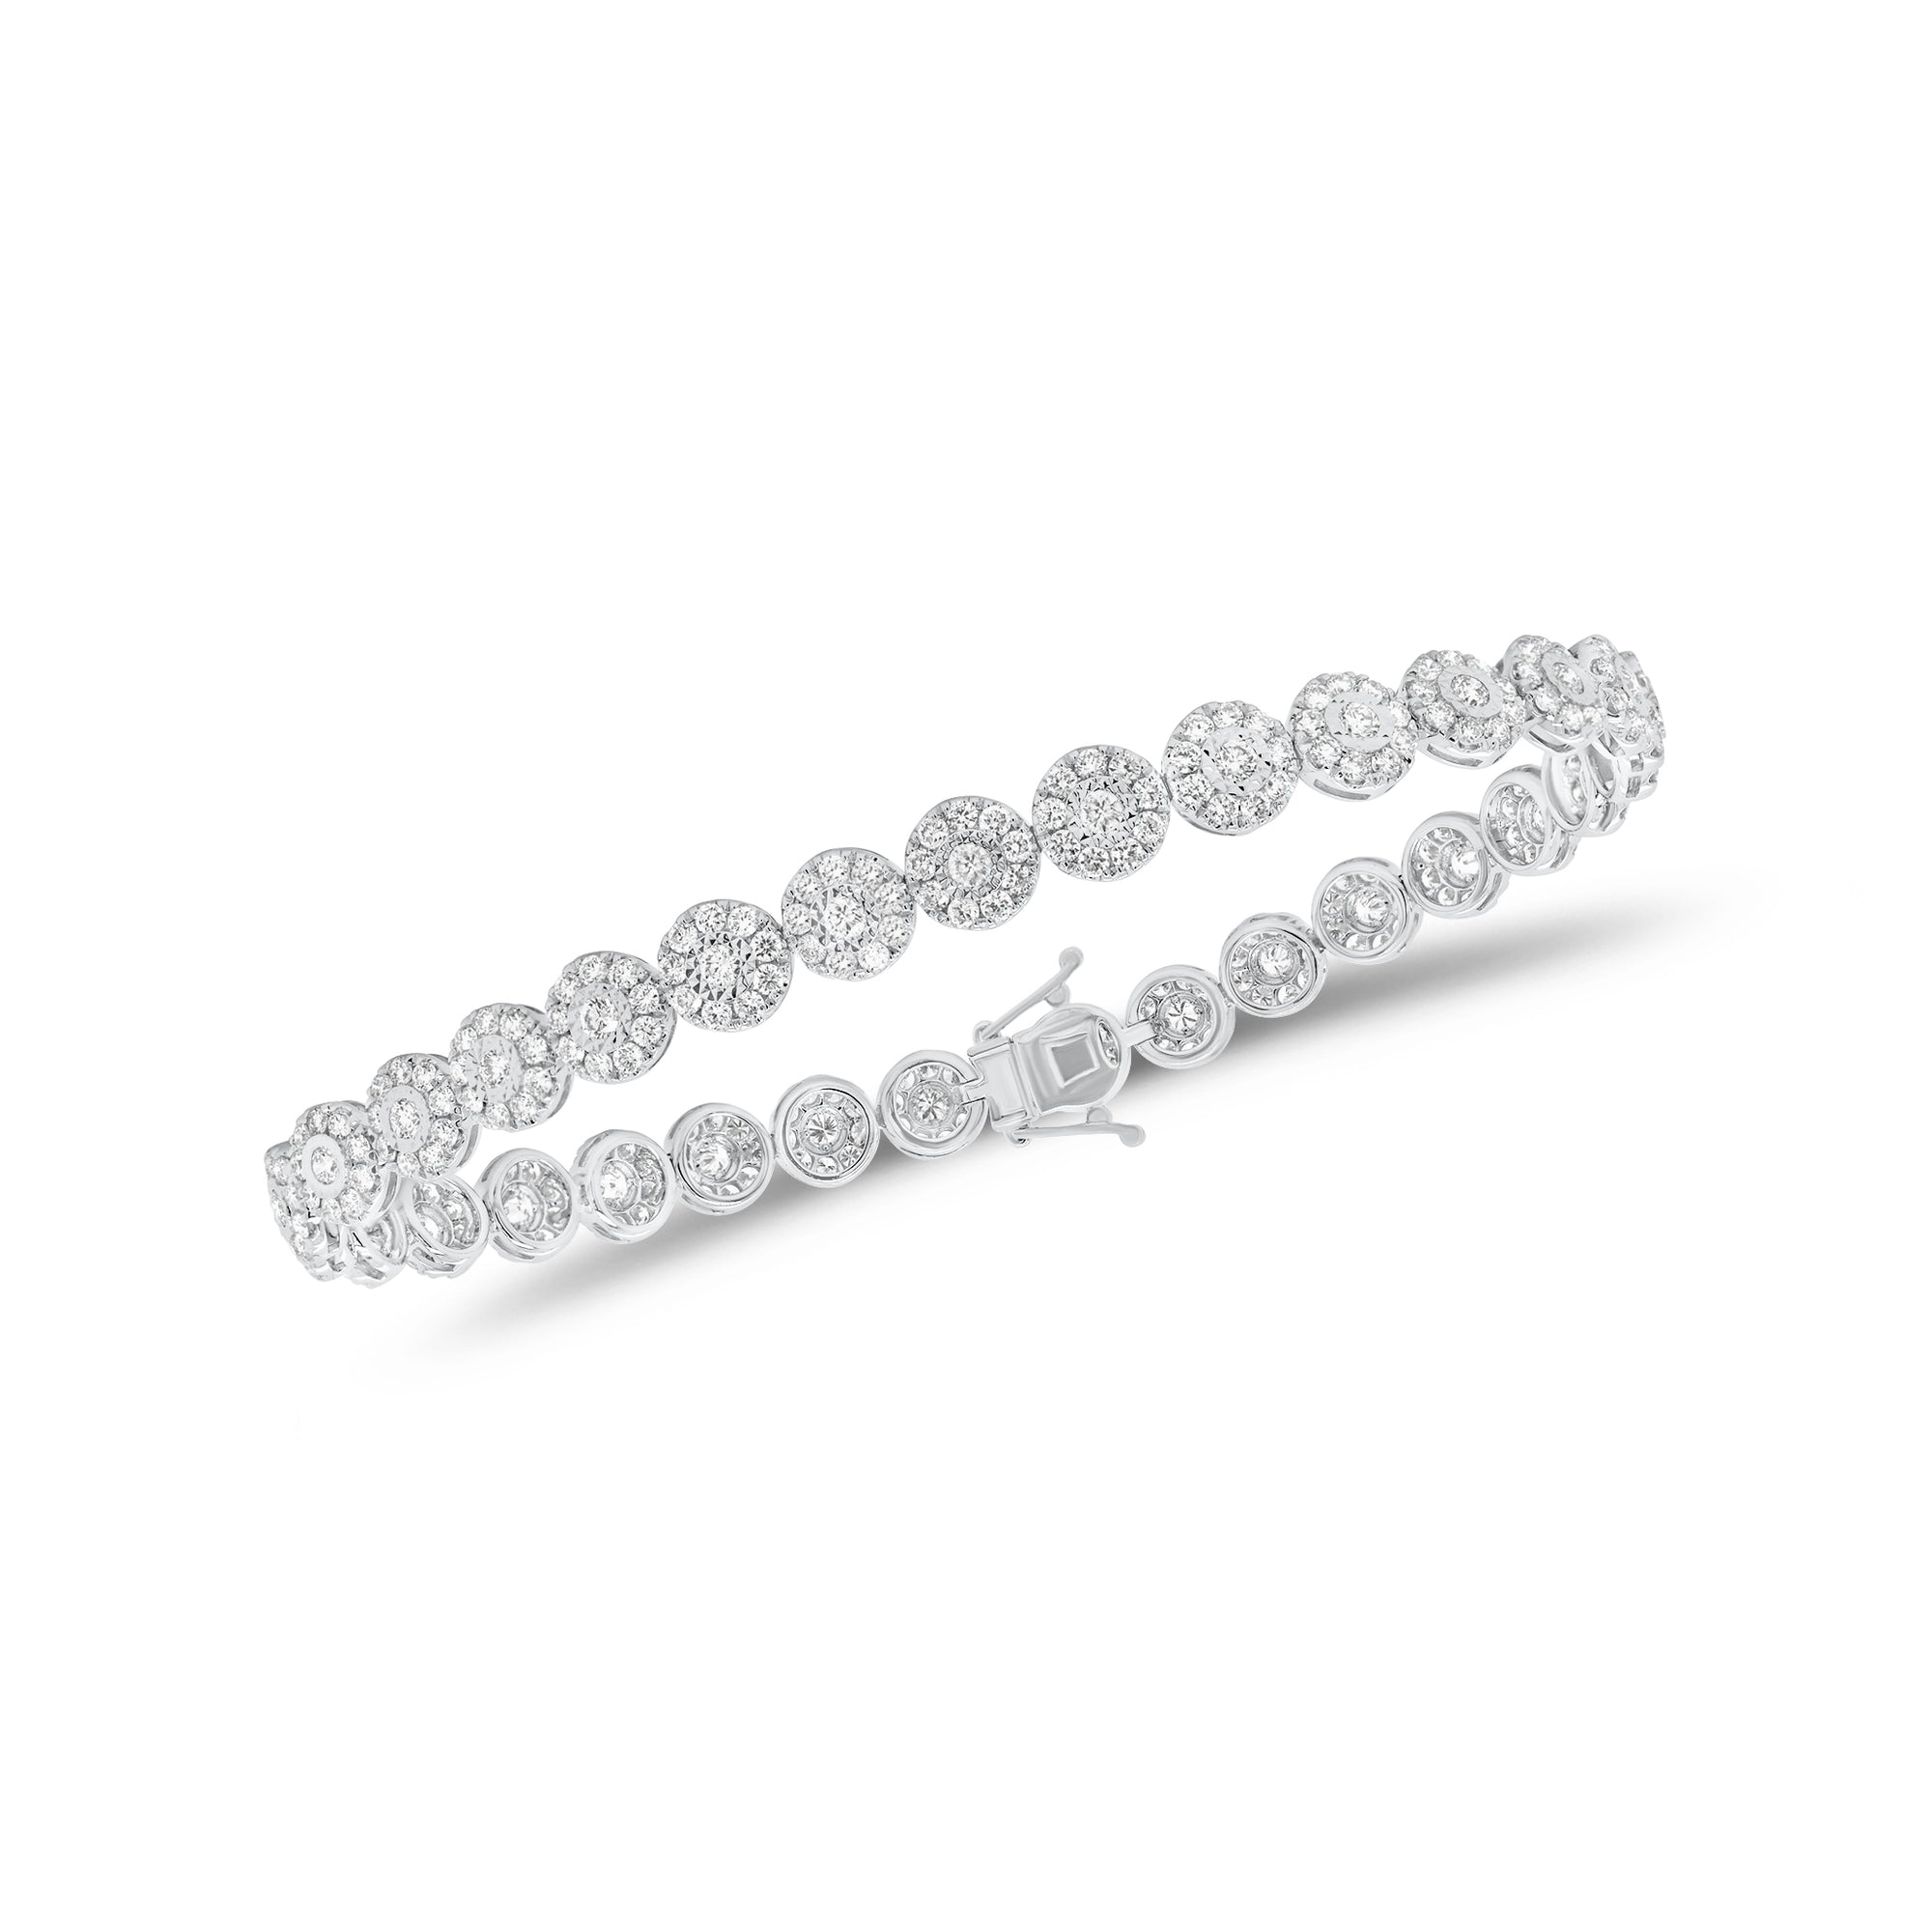 3.37 ct Diamond Halo Tennis Bracelet - 18K gold weighing 8.28 grams  - 310 round diamonds weighing 3.37 carats